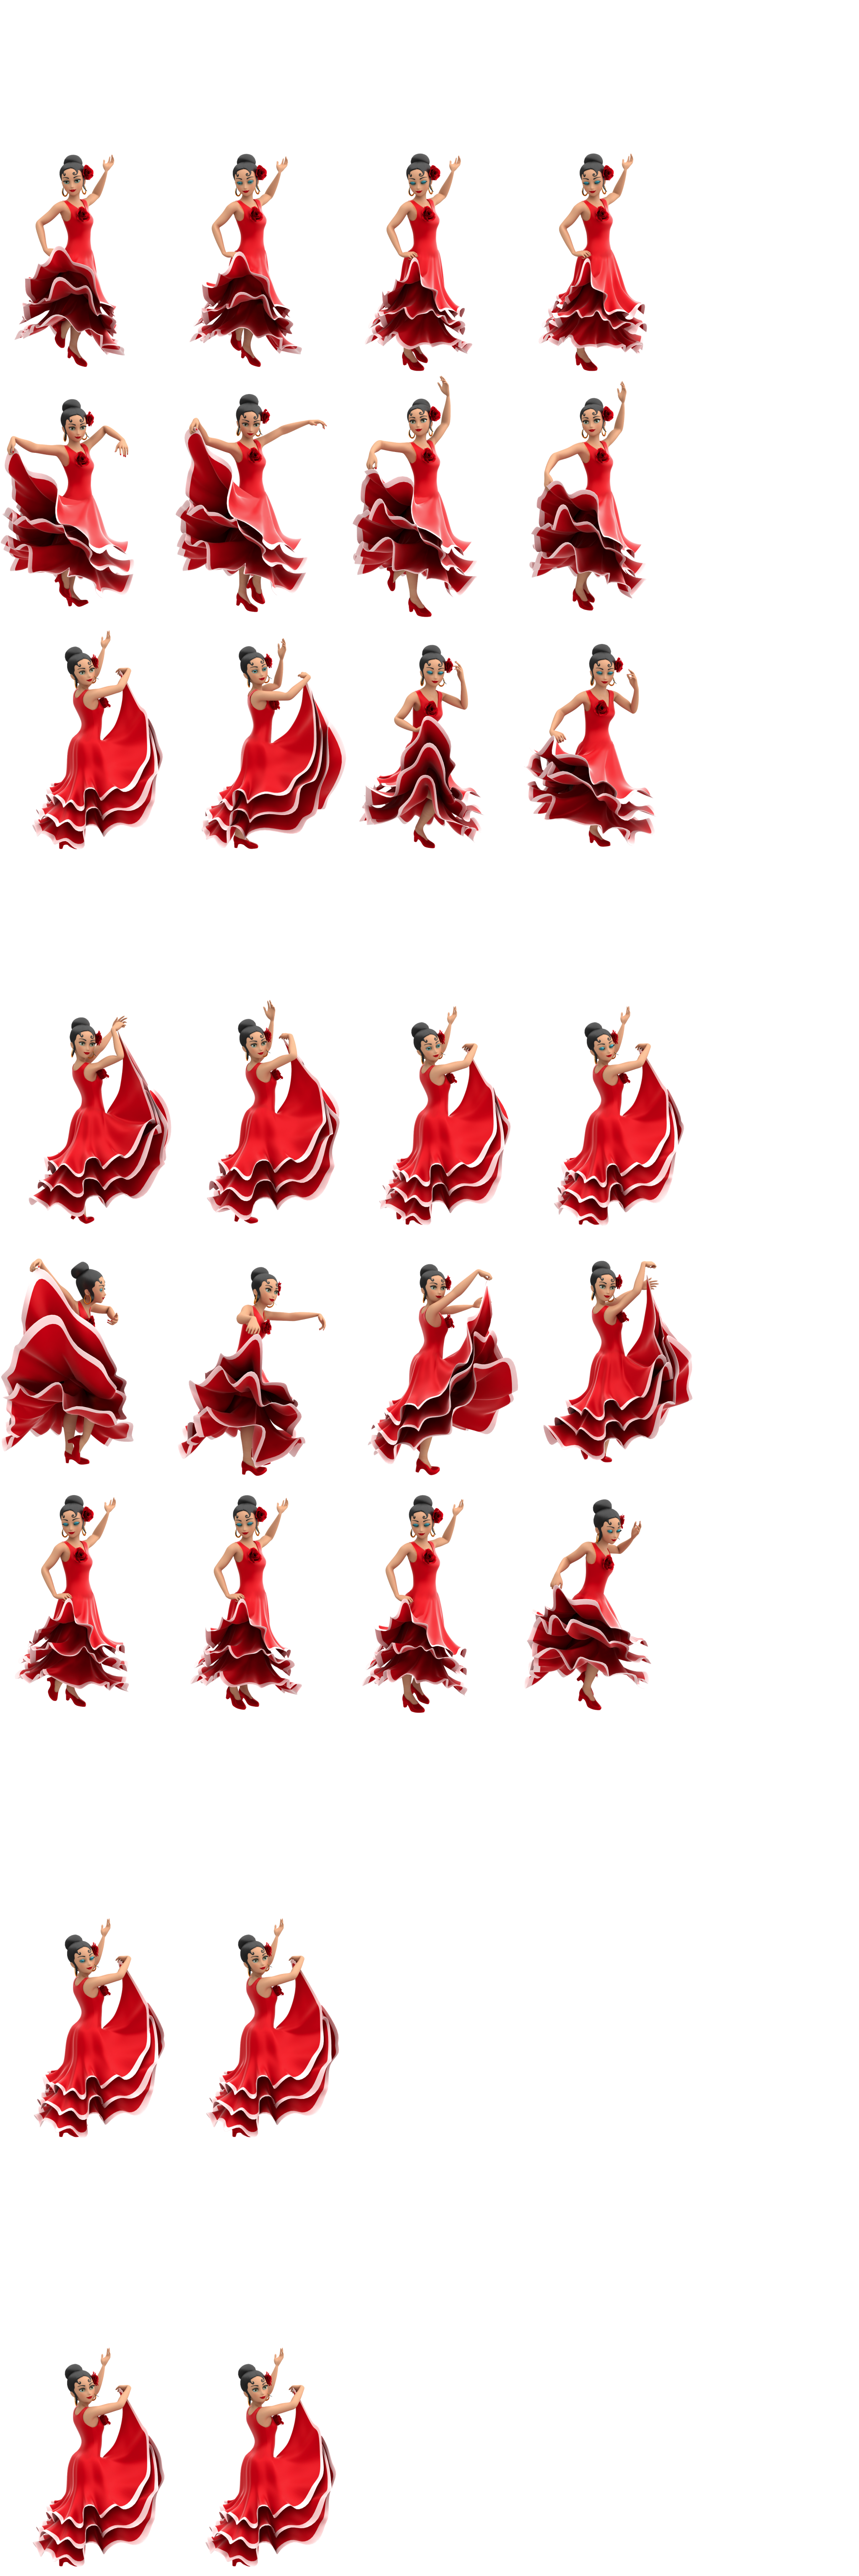 KID PIX 5: The STEAM Edition - Flamenco Dancer